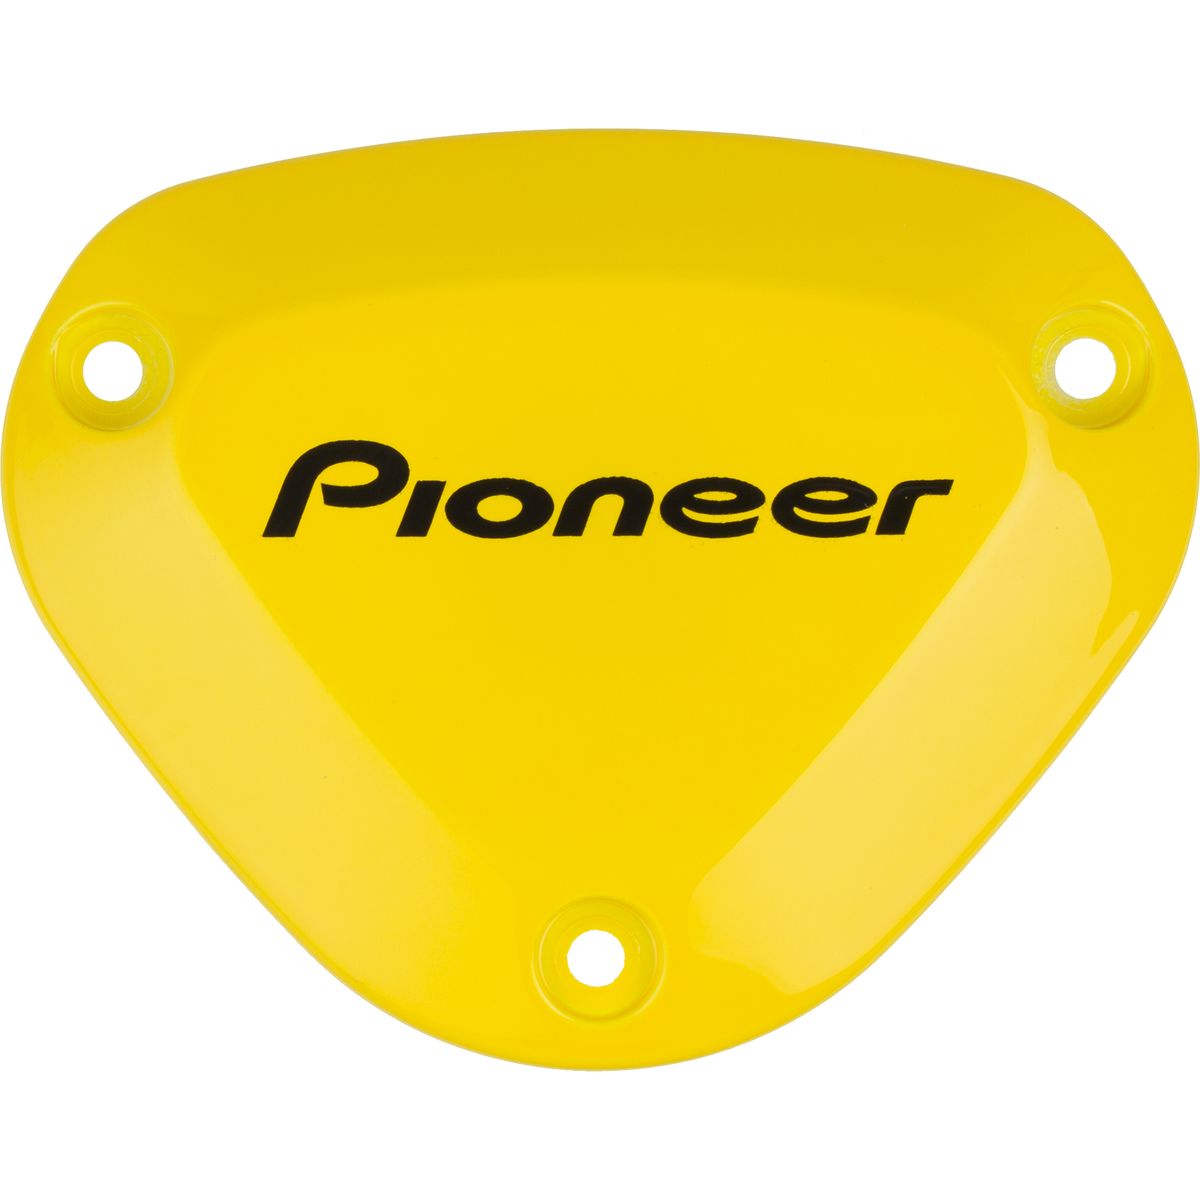 Pioneer Power Meter & Computer Color Kit